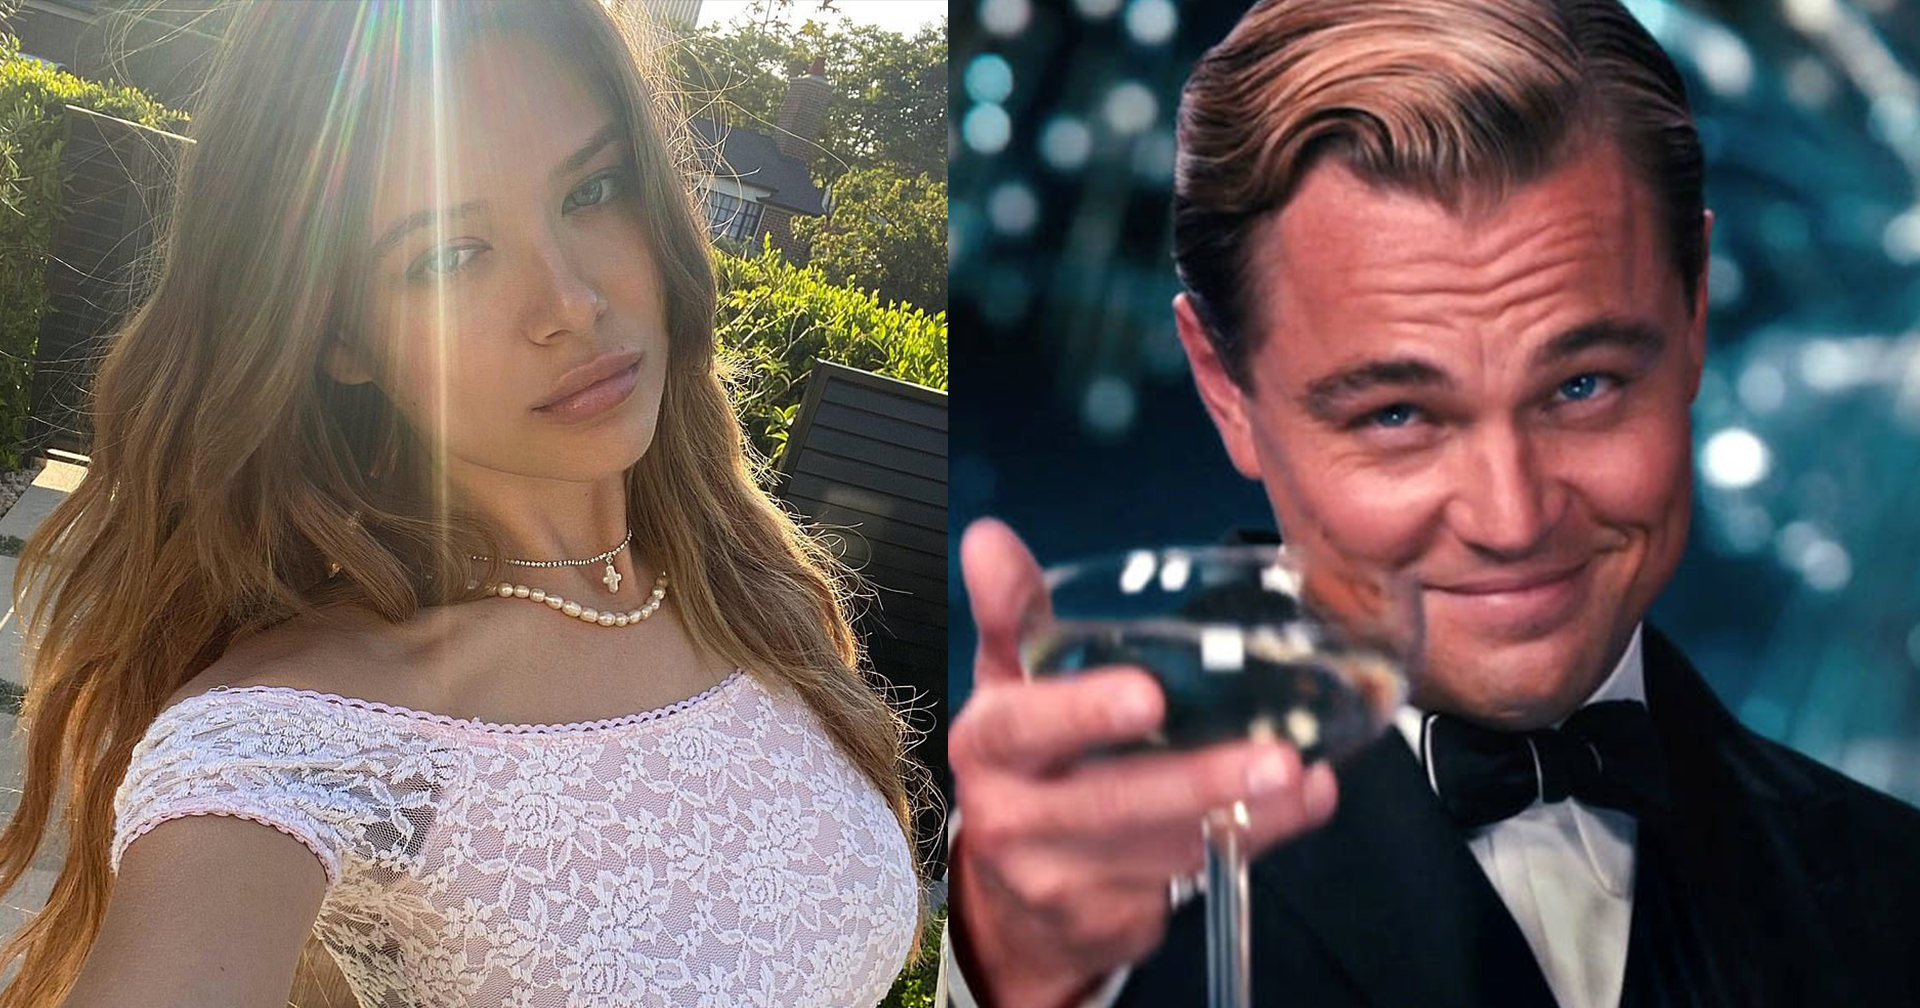 มีใหม่อีกแล้ว! Leonardo DiCaprio ควงสาวใหม่อายุ 23 ขึ้นเรือยอชต์สุดหรู